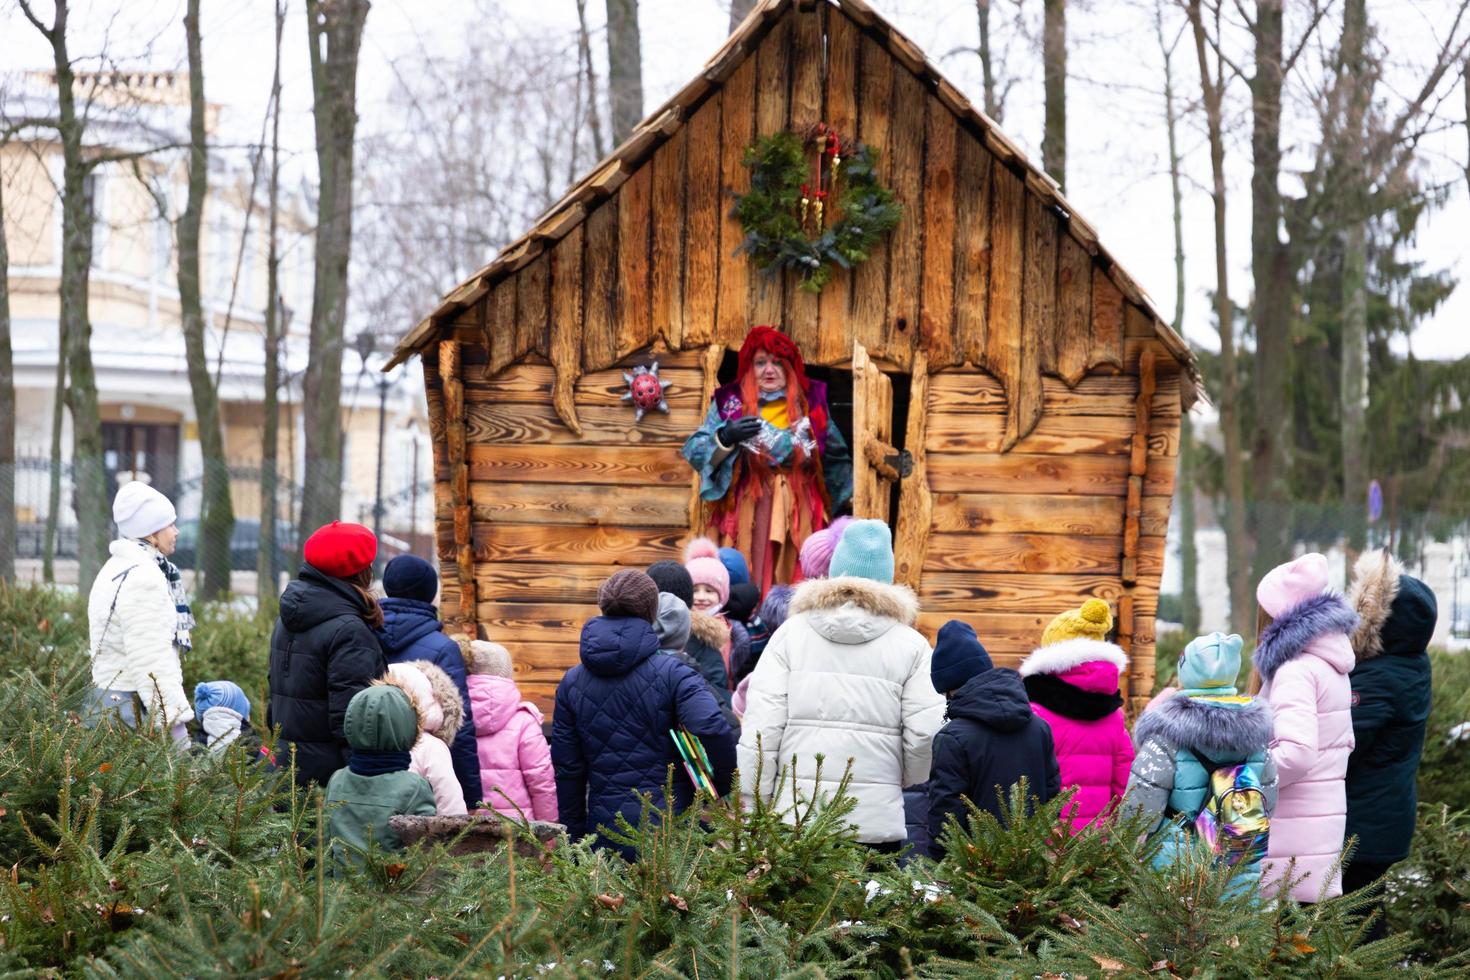 moskau, russland - 2. januar 2021 ein vergnügungspark mit hölzernen märchenhäusern, ein spielplatz mit skulpturen von märchenfiguren. foto